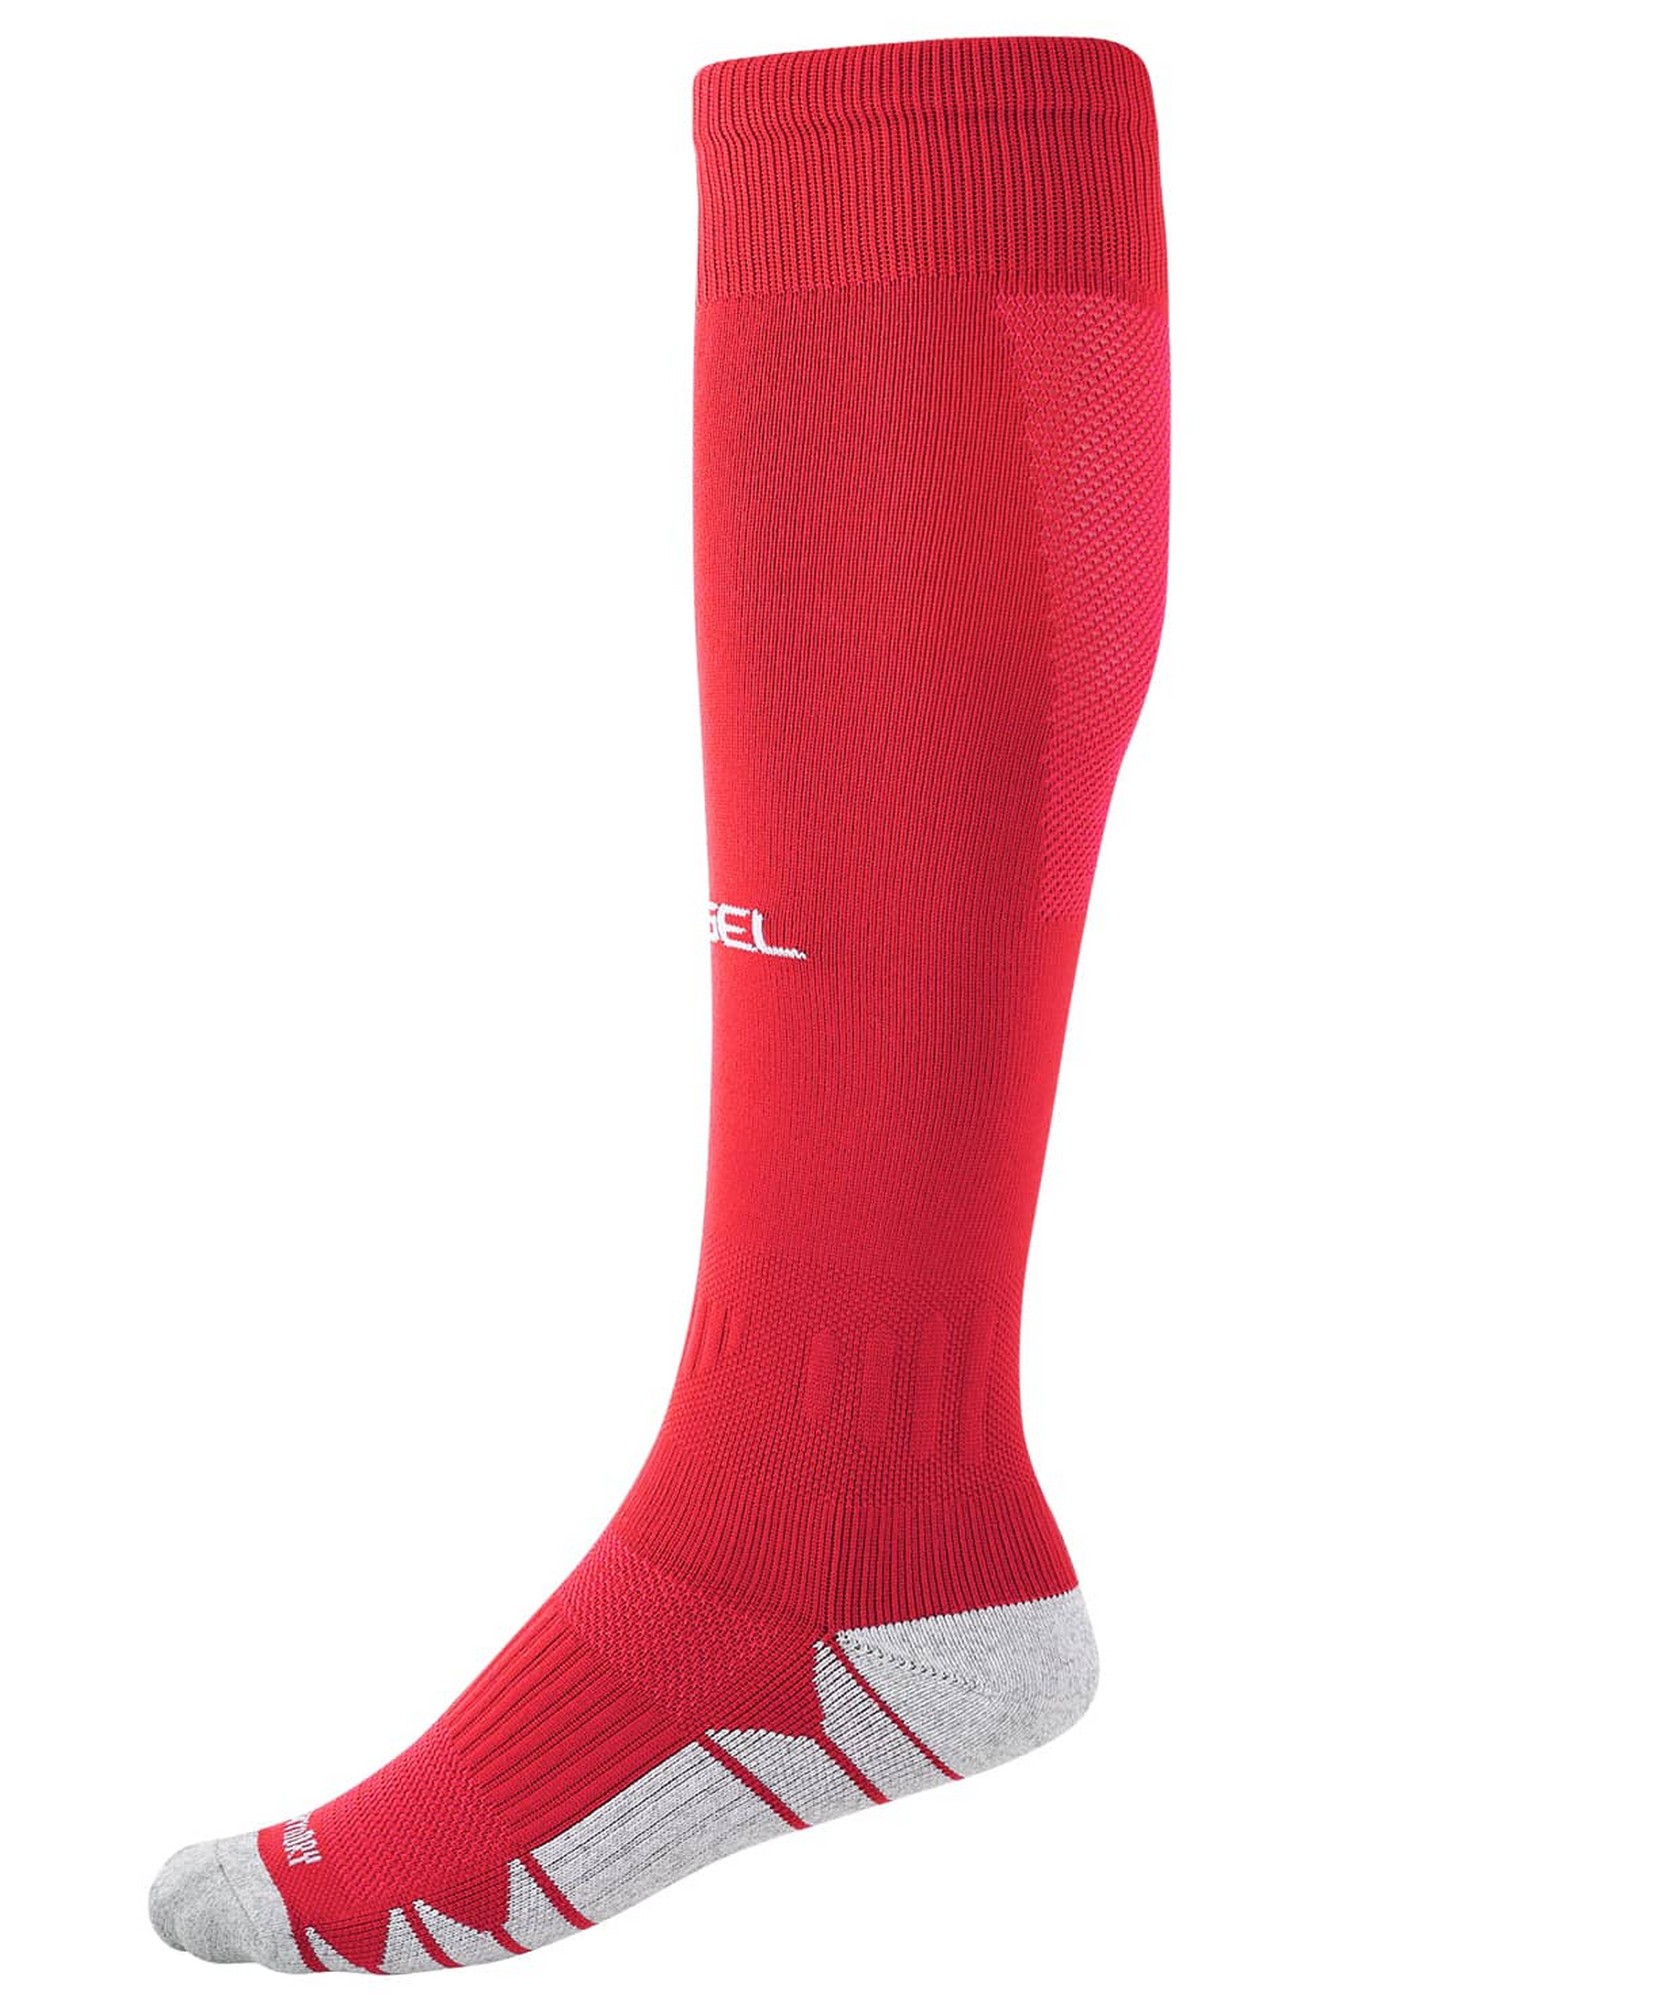 Гетры футбольные Jogel Match Socks красный 1667_2000